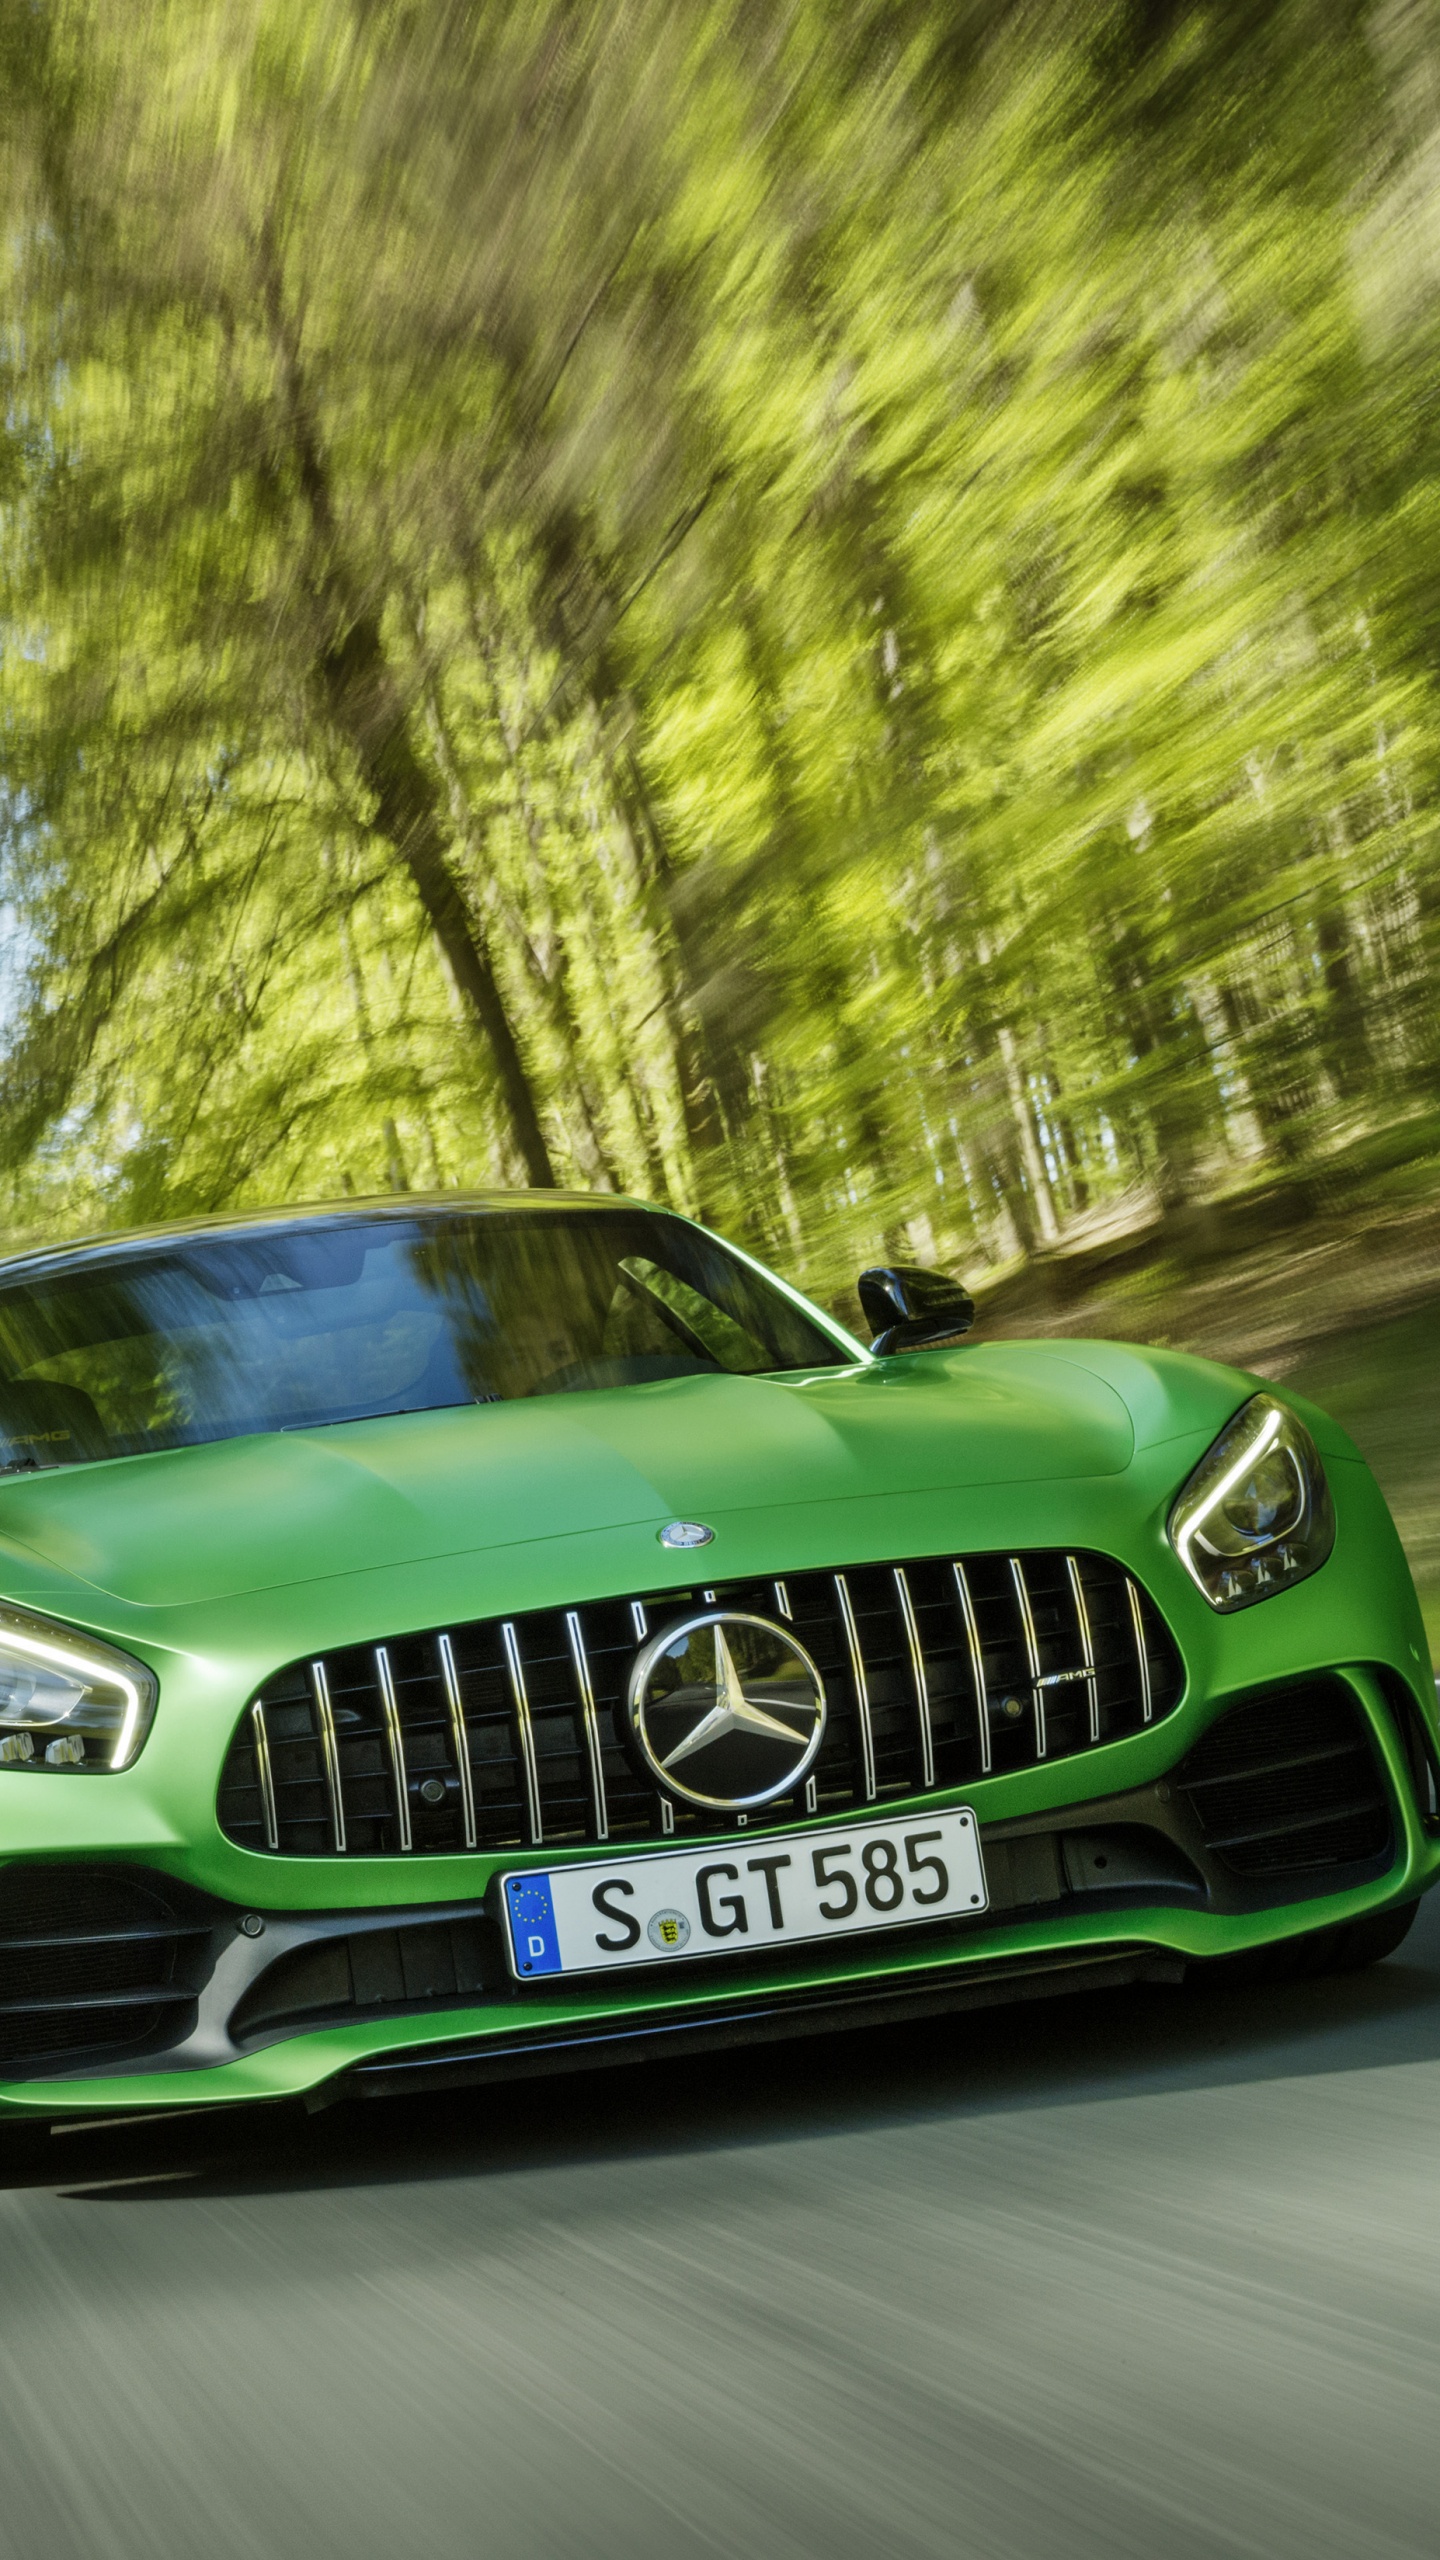 Grünes Mercedes Benz Auto Tagsüber Unterwegs. Wallpaper in 1440x2560 Resolution